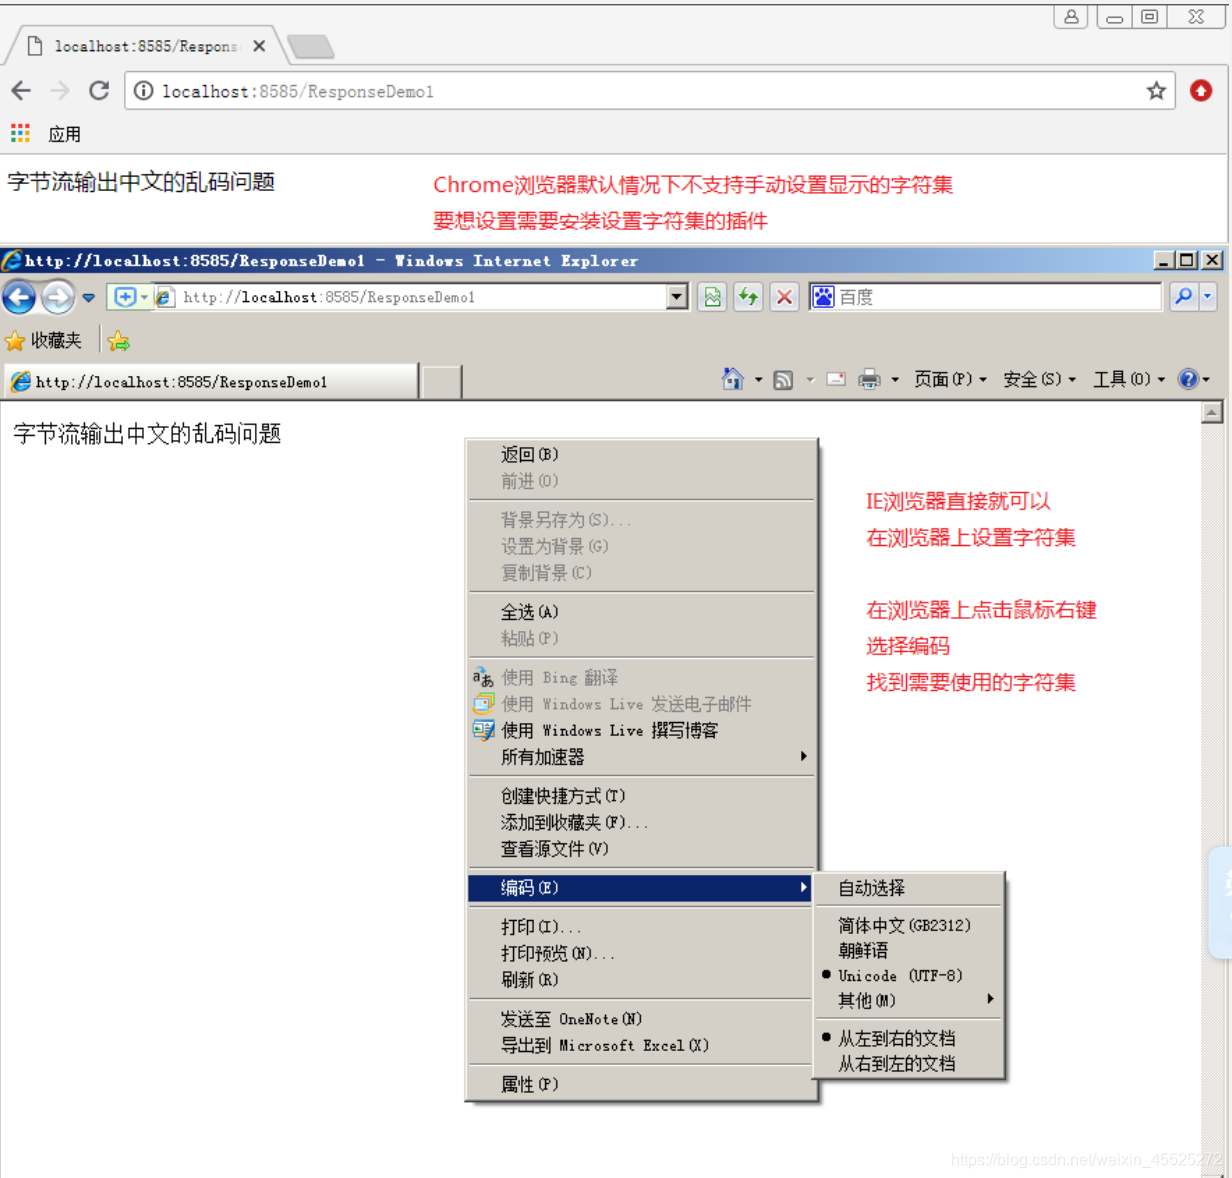 Javaweb 响应字节流输出中文乱码问题